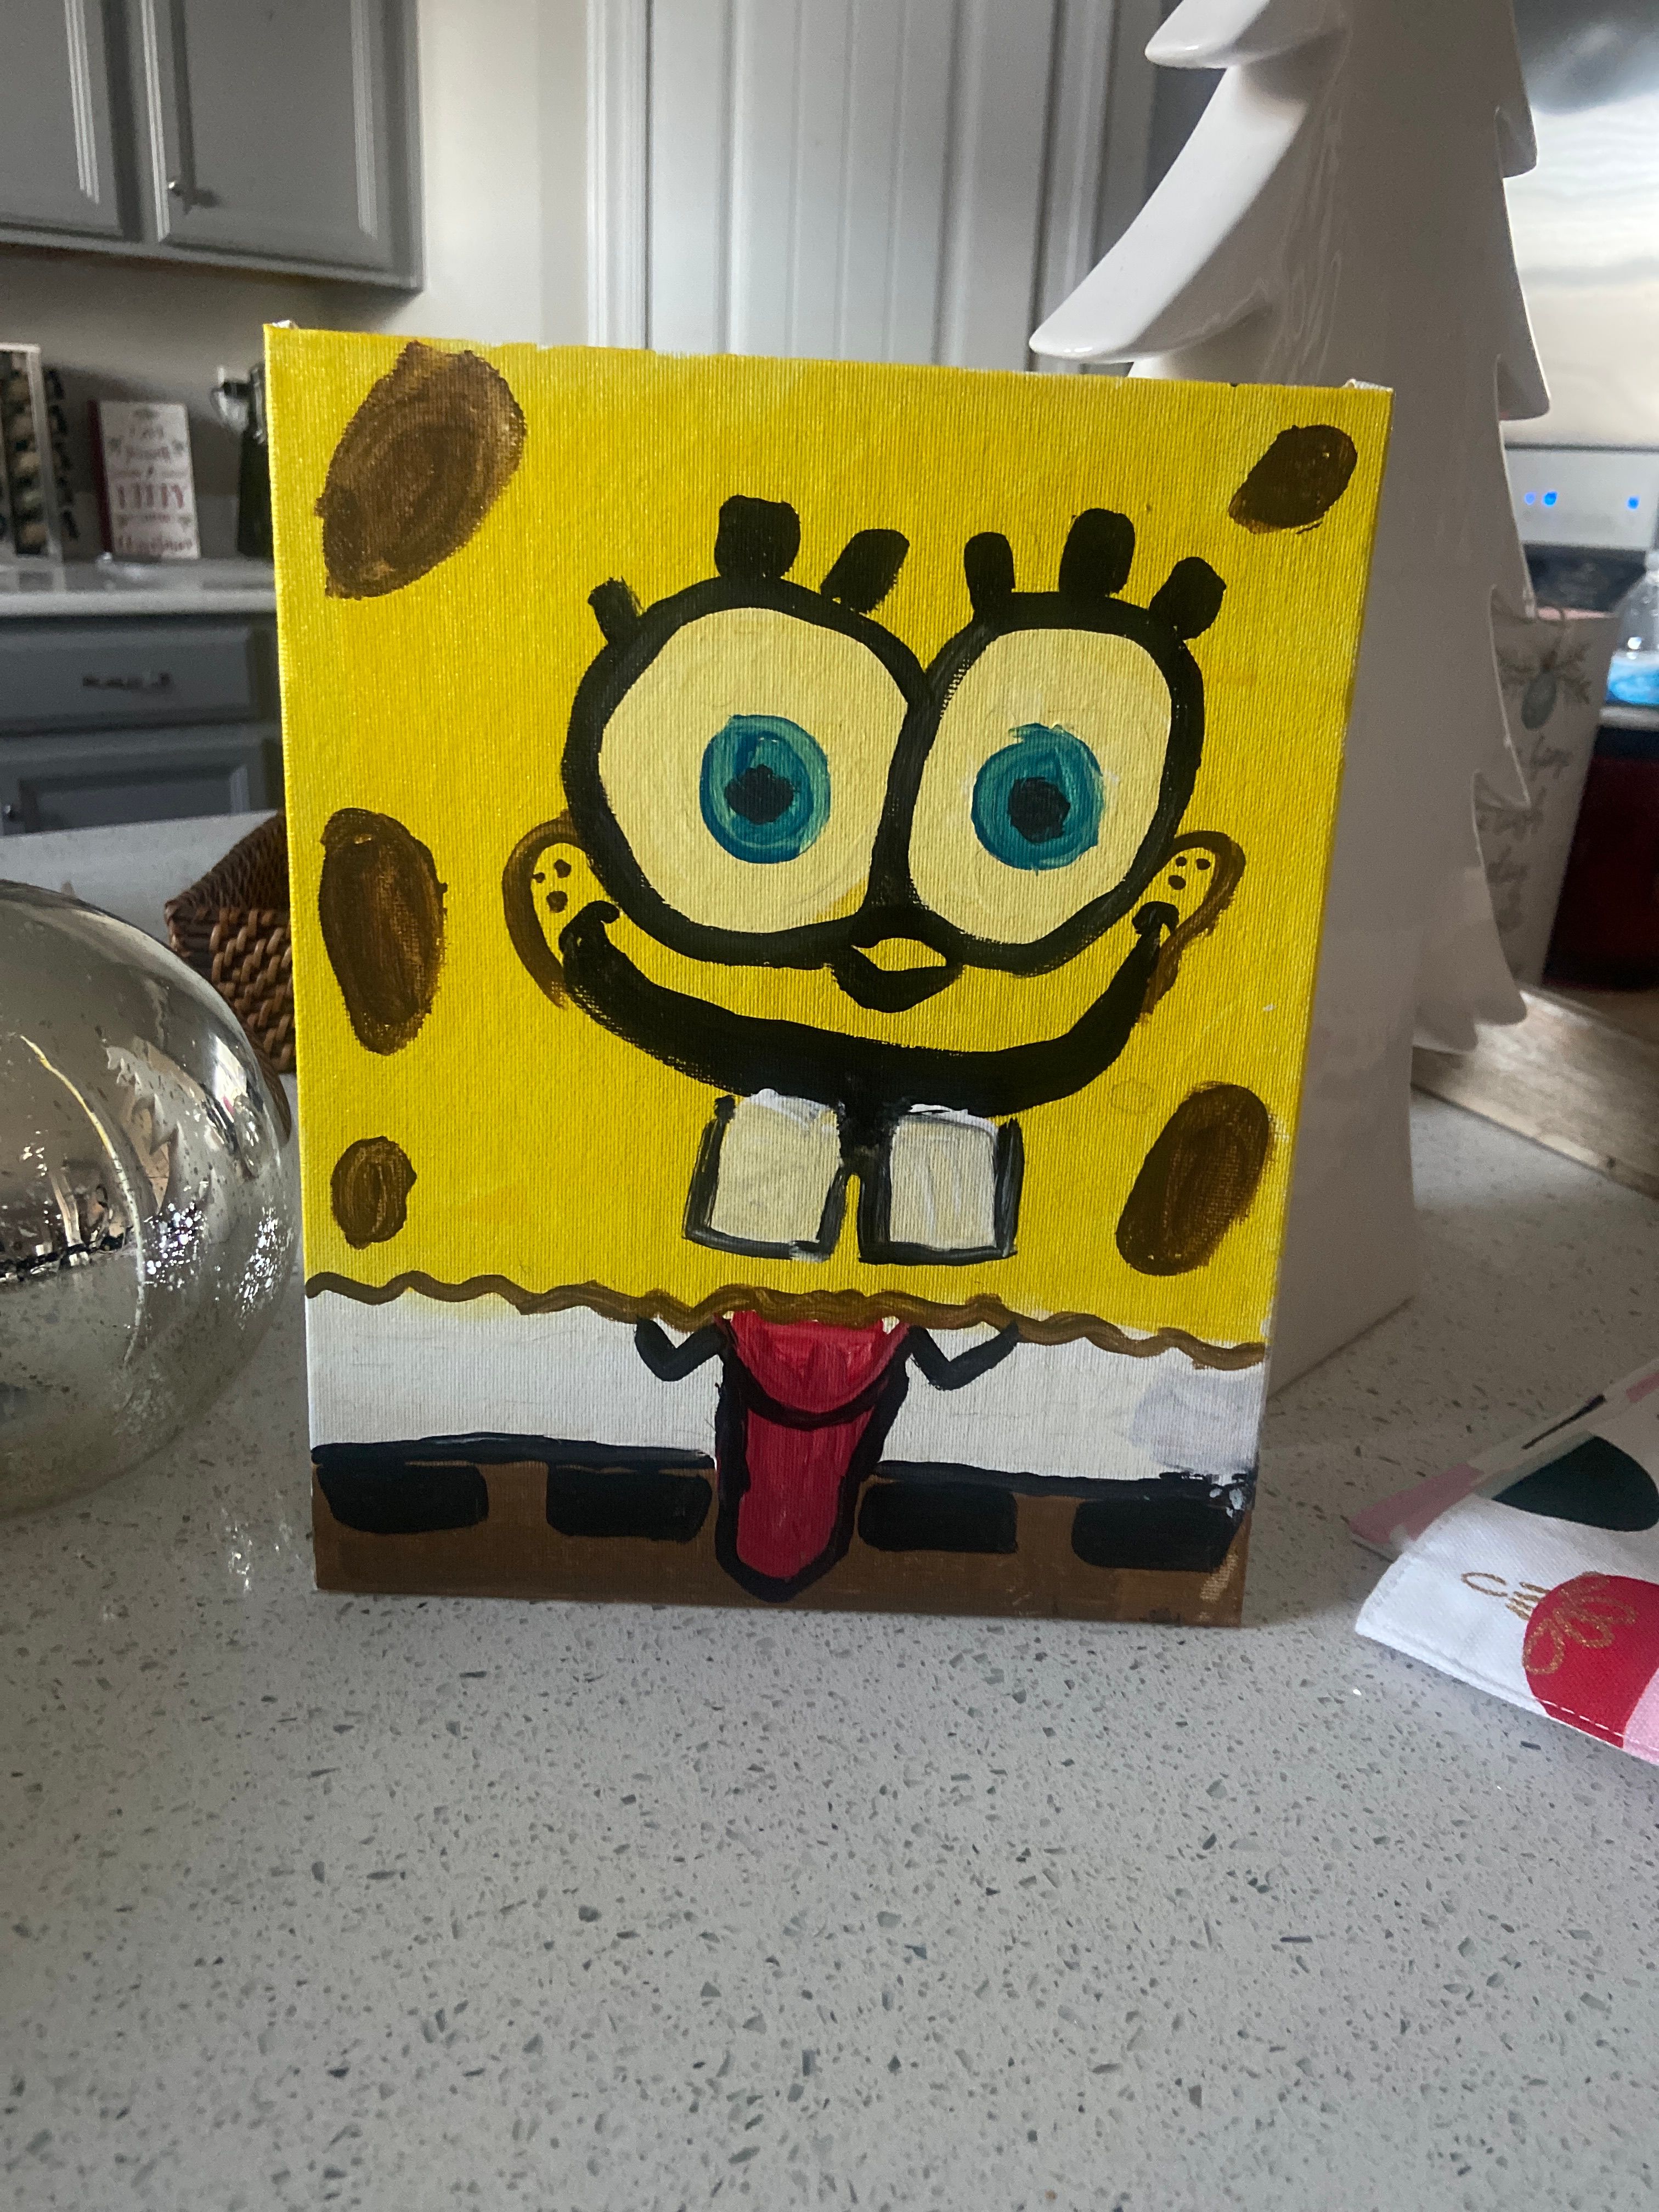 Let's Paint Spongebob Squarepants- Kids! | Small Online Class for Ages ...